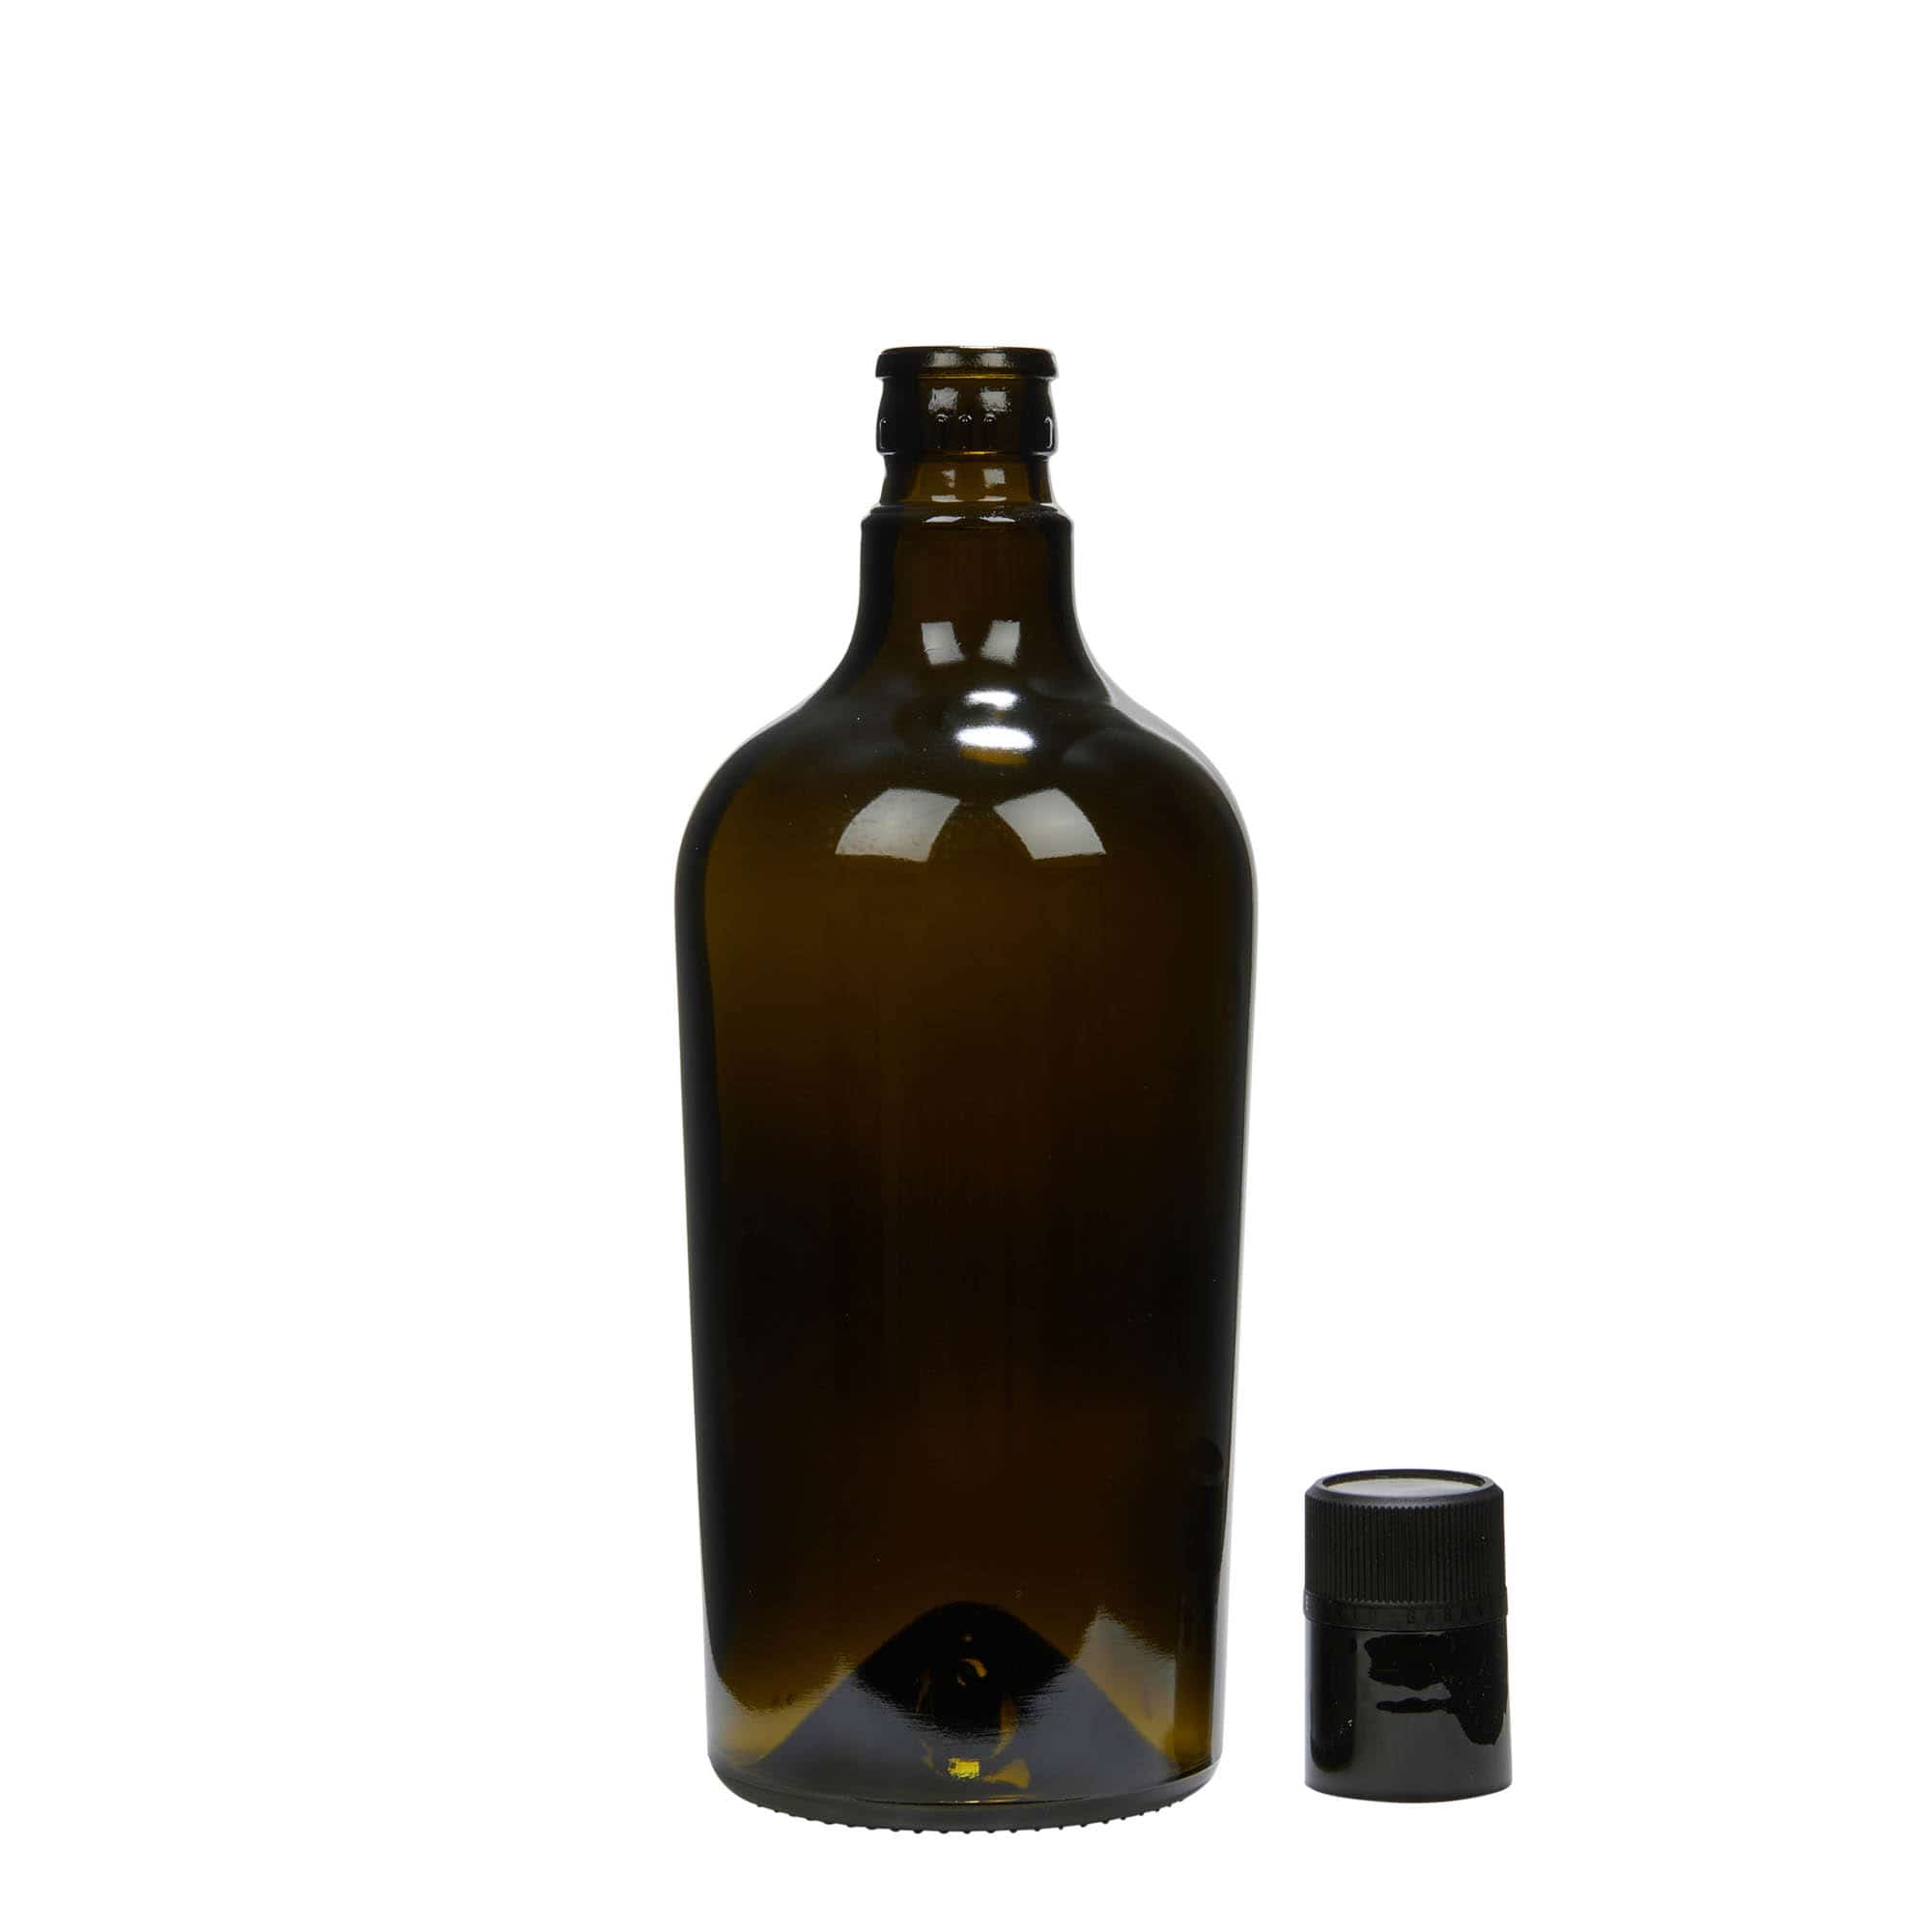 Lahev na ocet/olej 750 ml 'Oleum', sklo, starožitná zelená, ústí: DOP